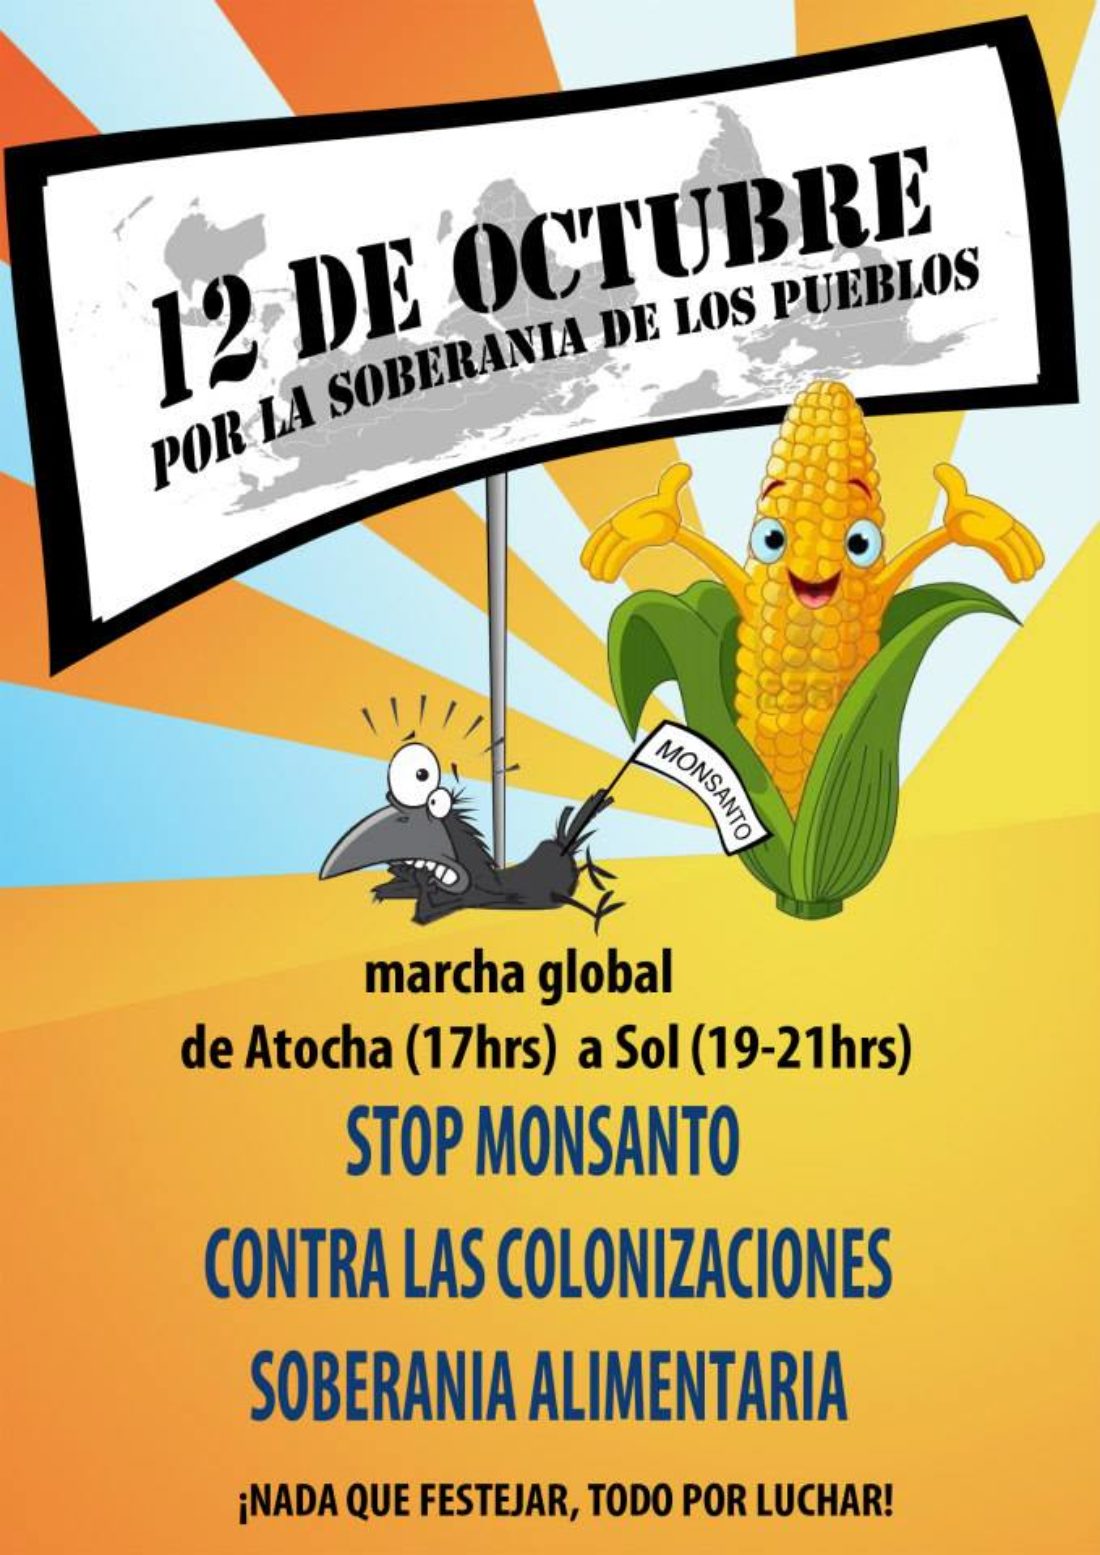 Marcha global por la soberanía de los pueblos: Stop Monsanto, Contra el neocolonialismo, Por la soberanía alimentaria